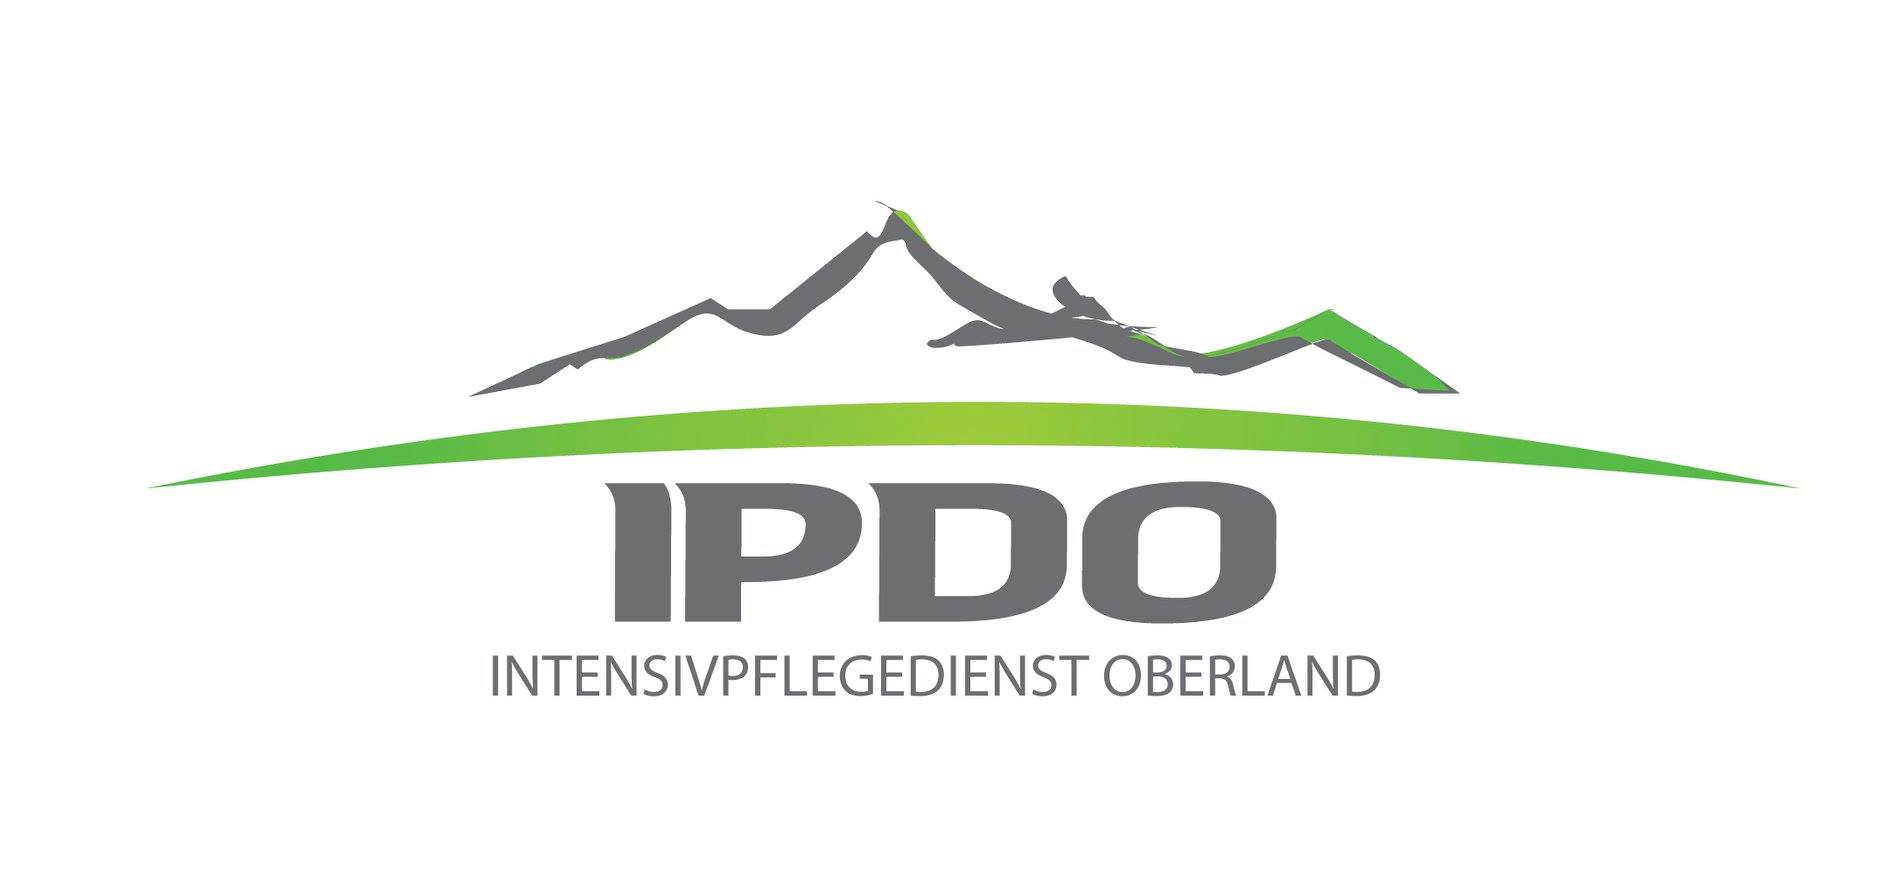 Intensivpflegedienst Oberland GmbH